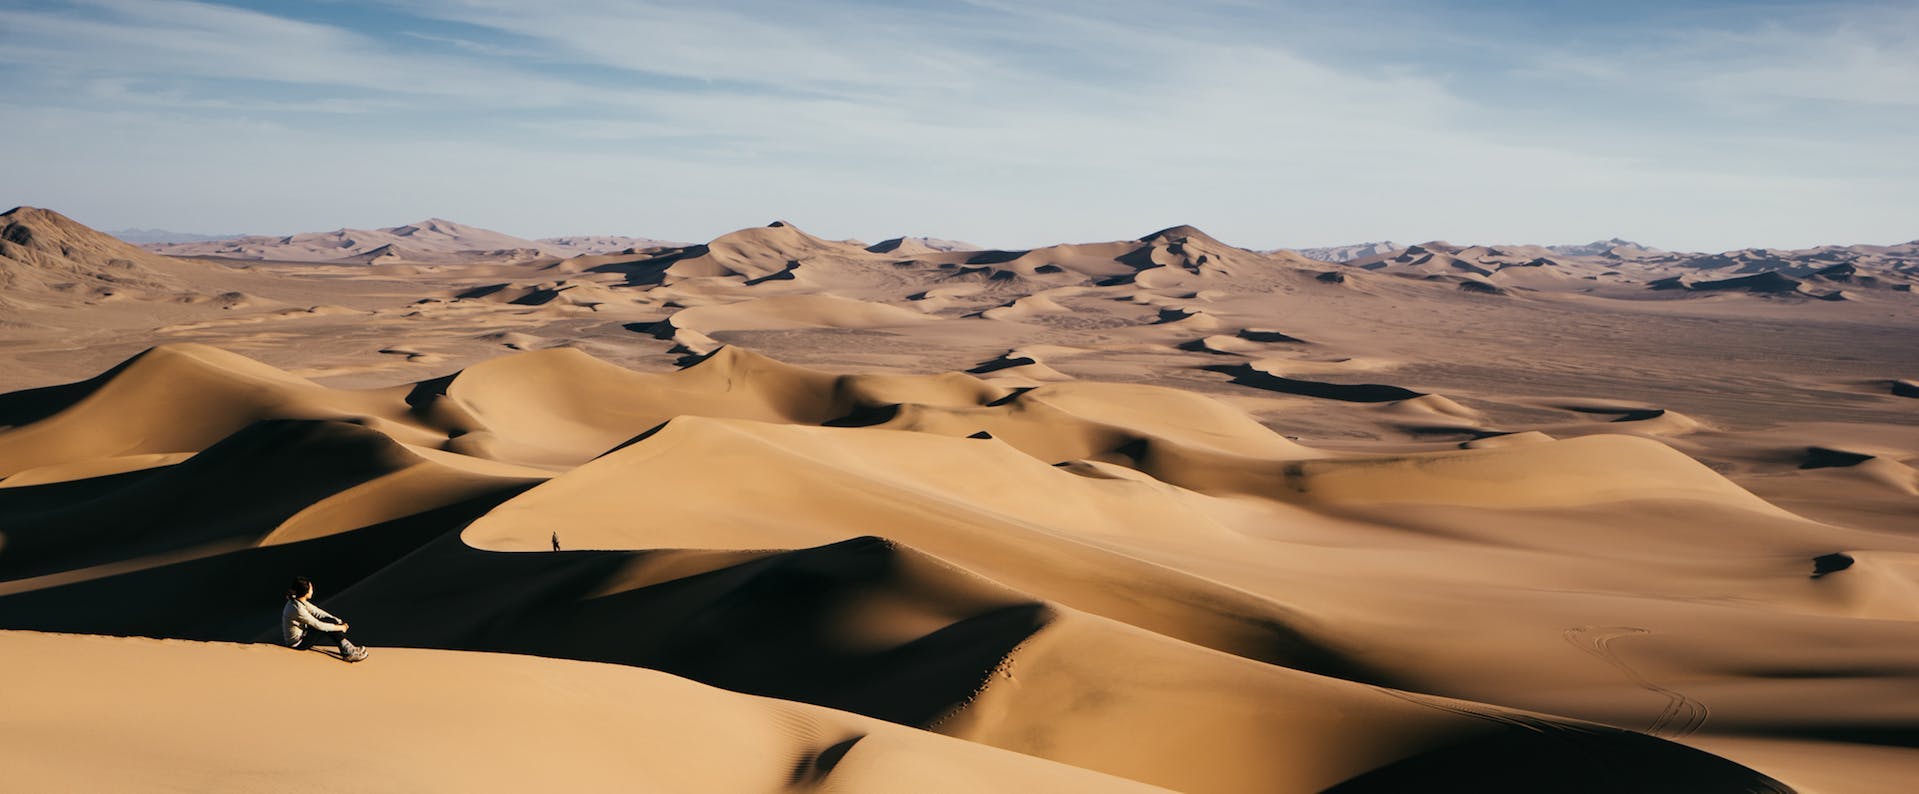 soil sand nature outdoors dune desert